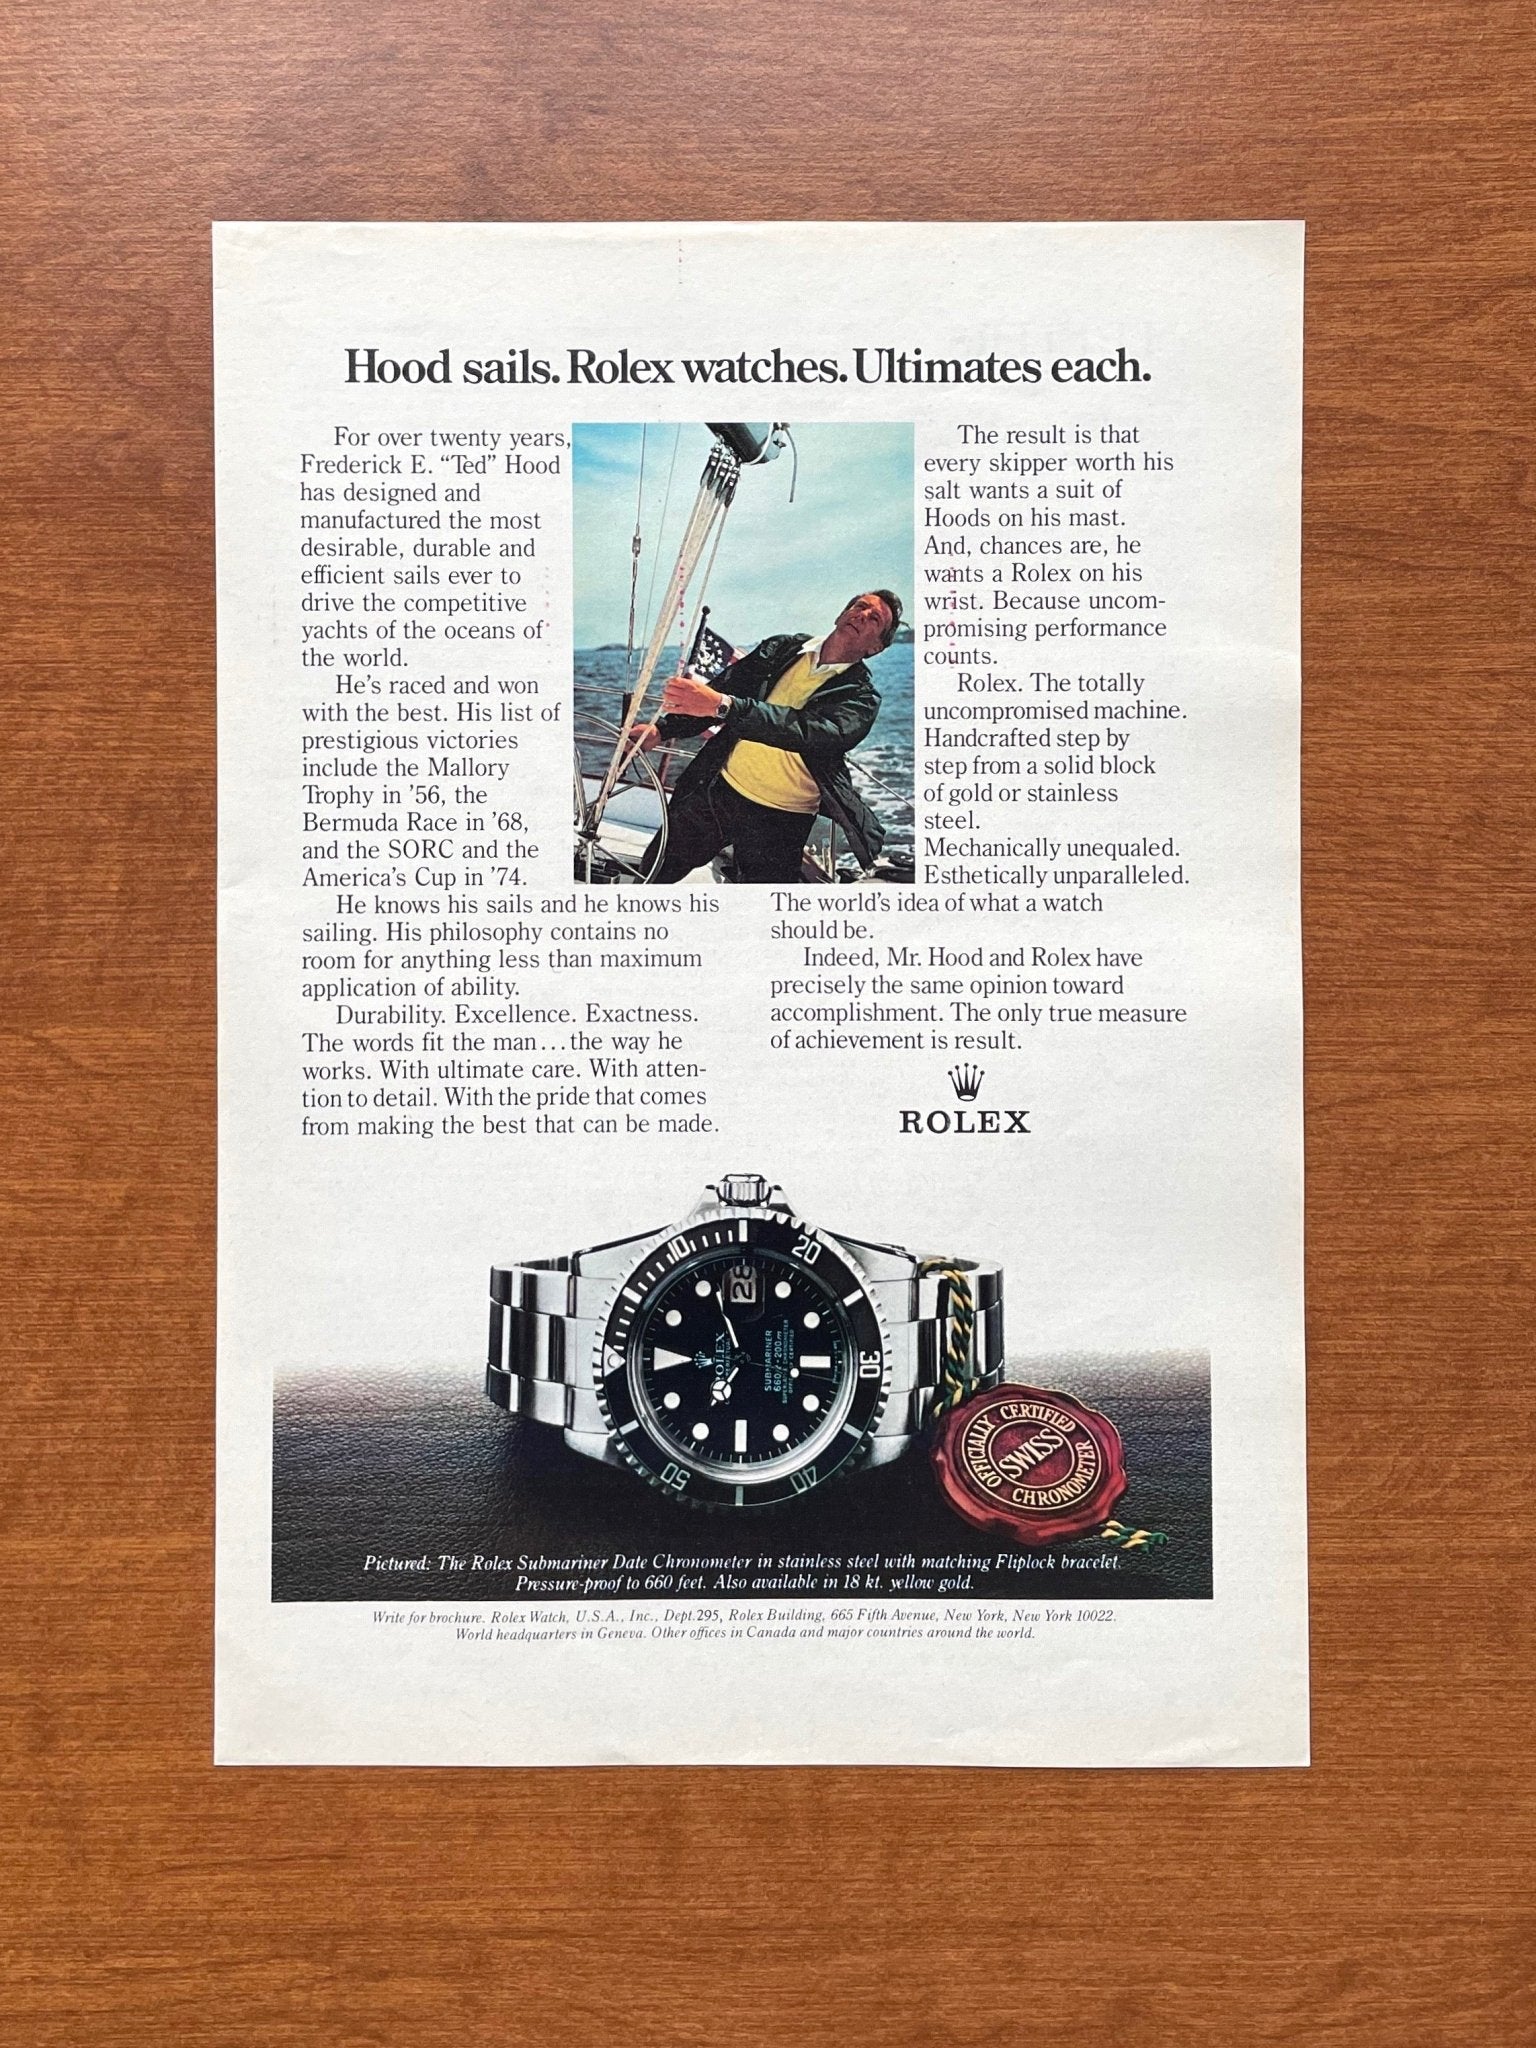 1981 Rolex Submariner Ref. 1680 "Hood sails." Advertisement